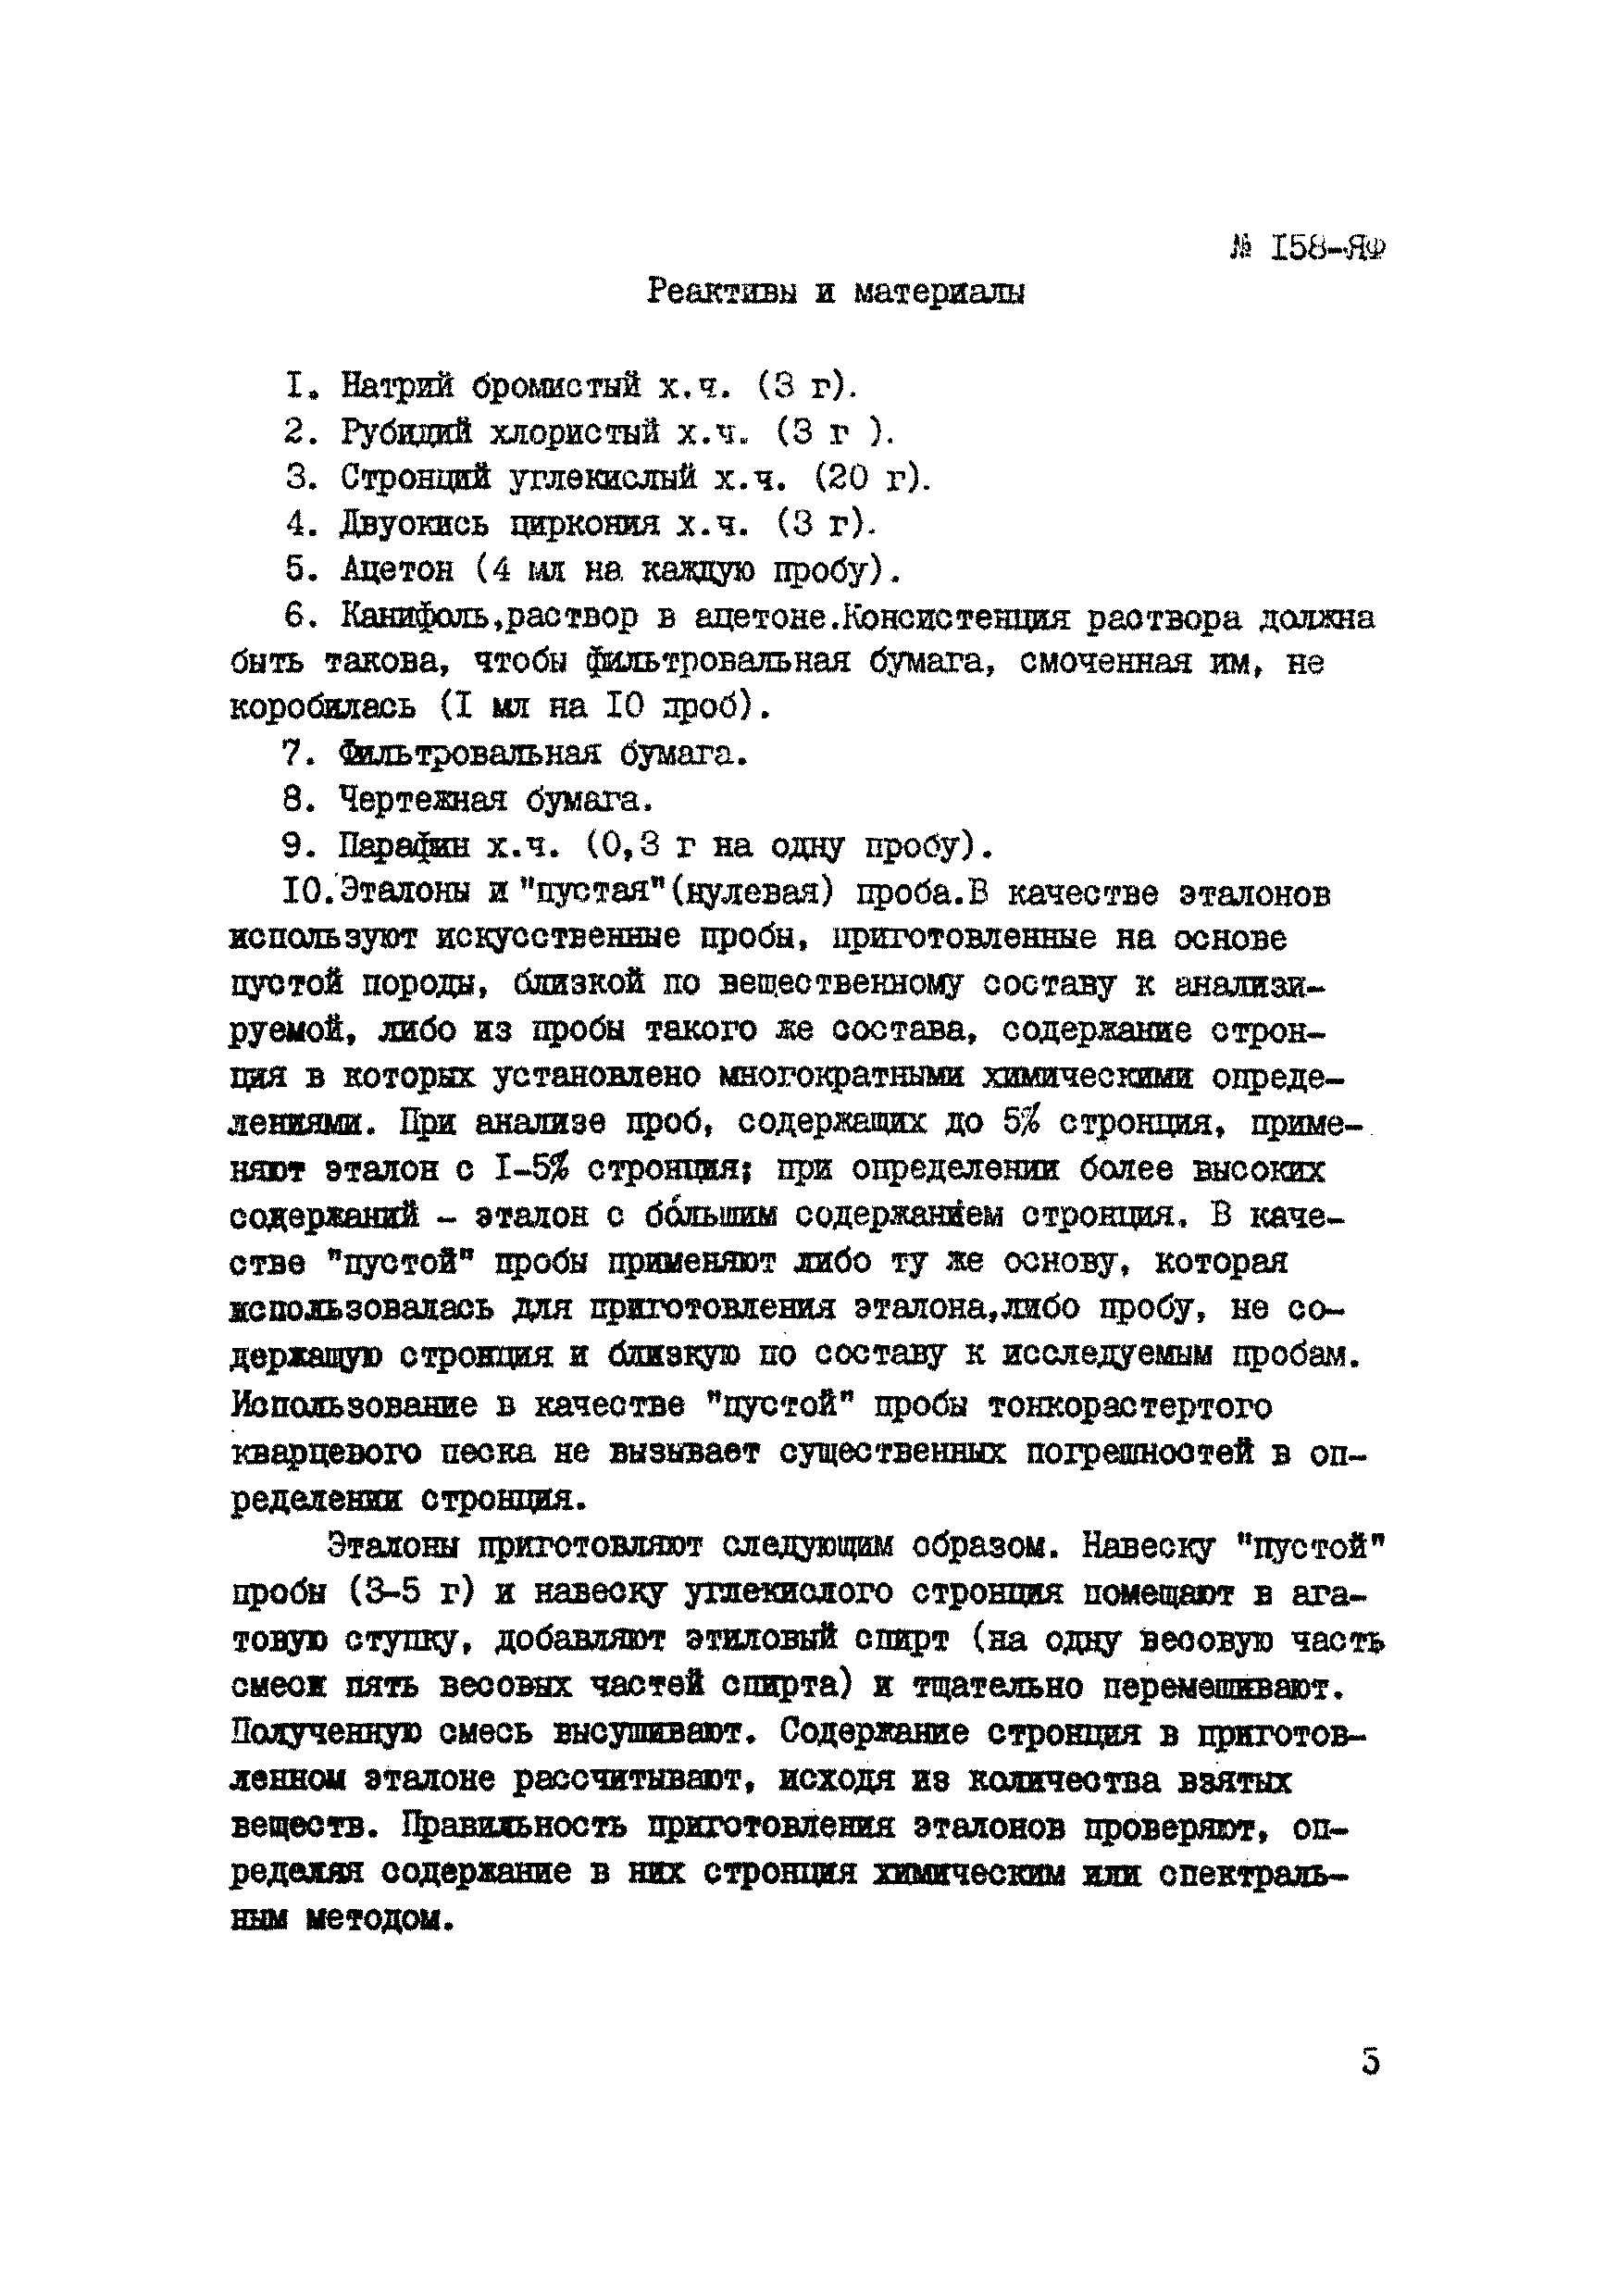 Инструкция НСАМ 158-ЯФ